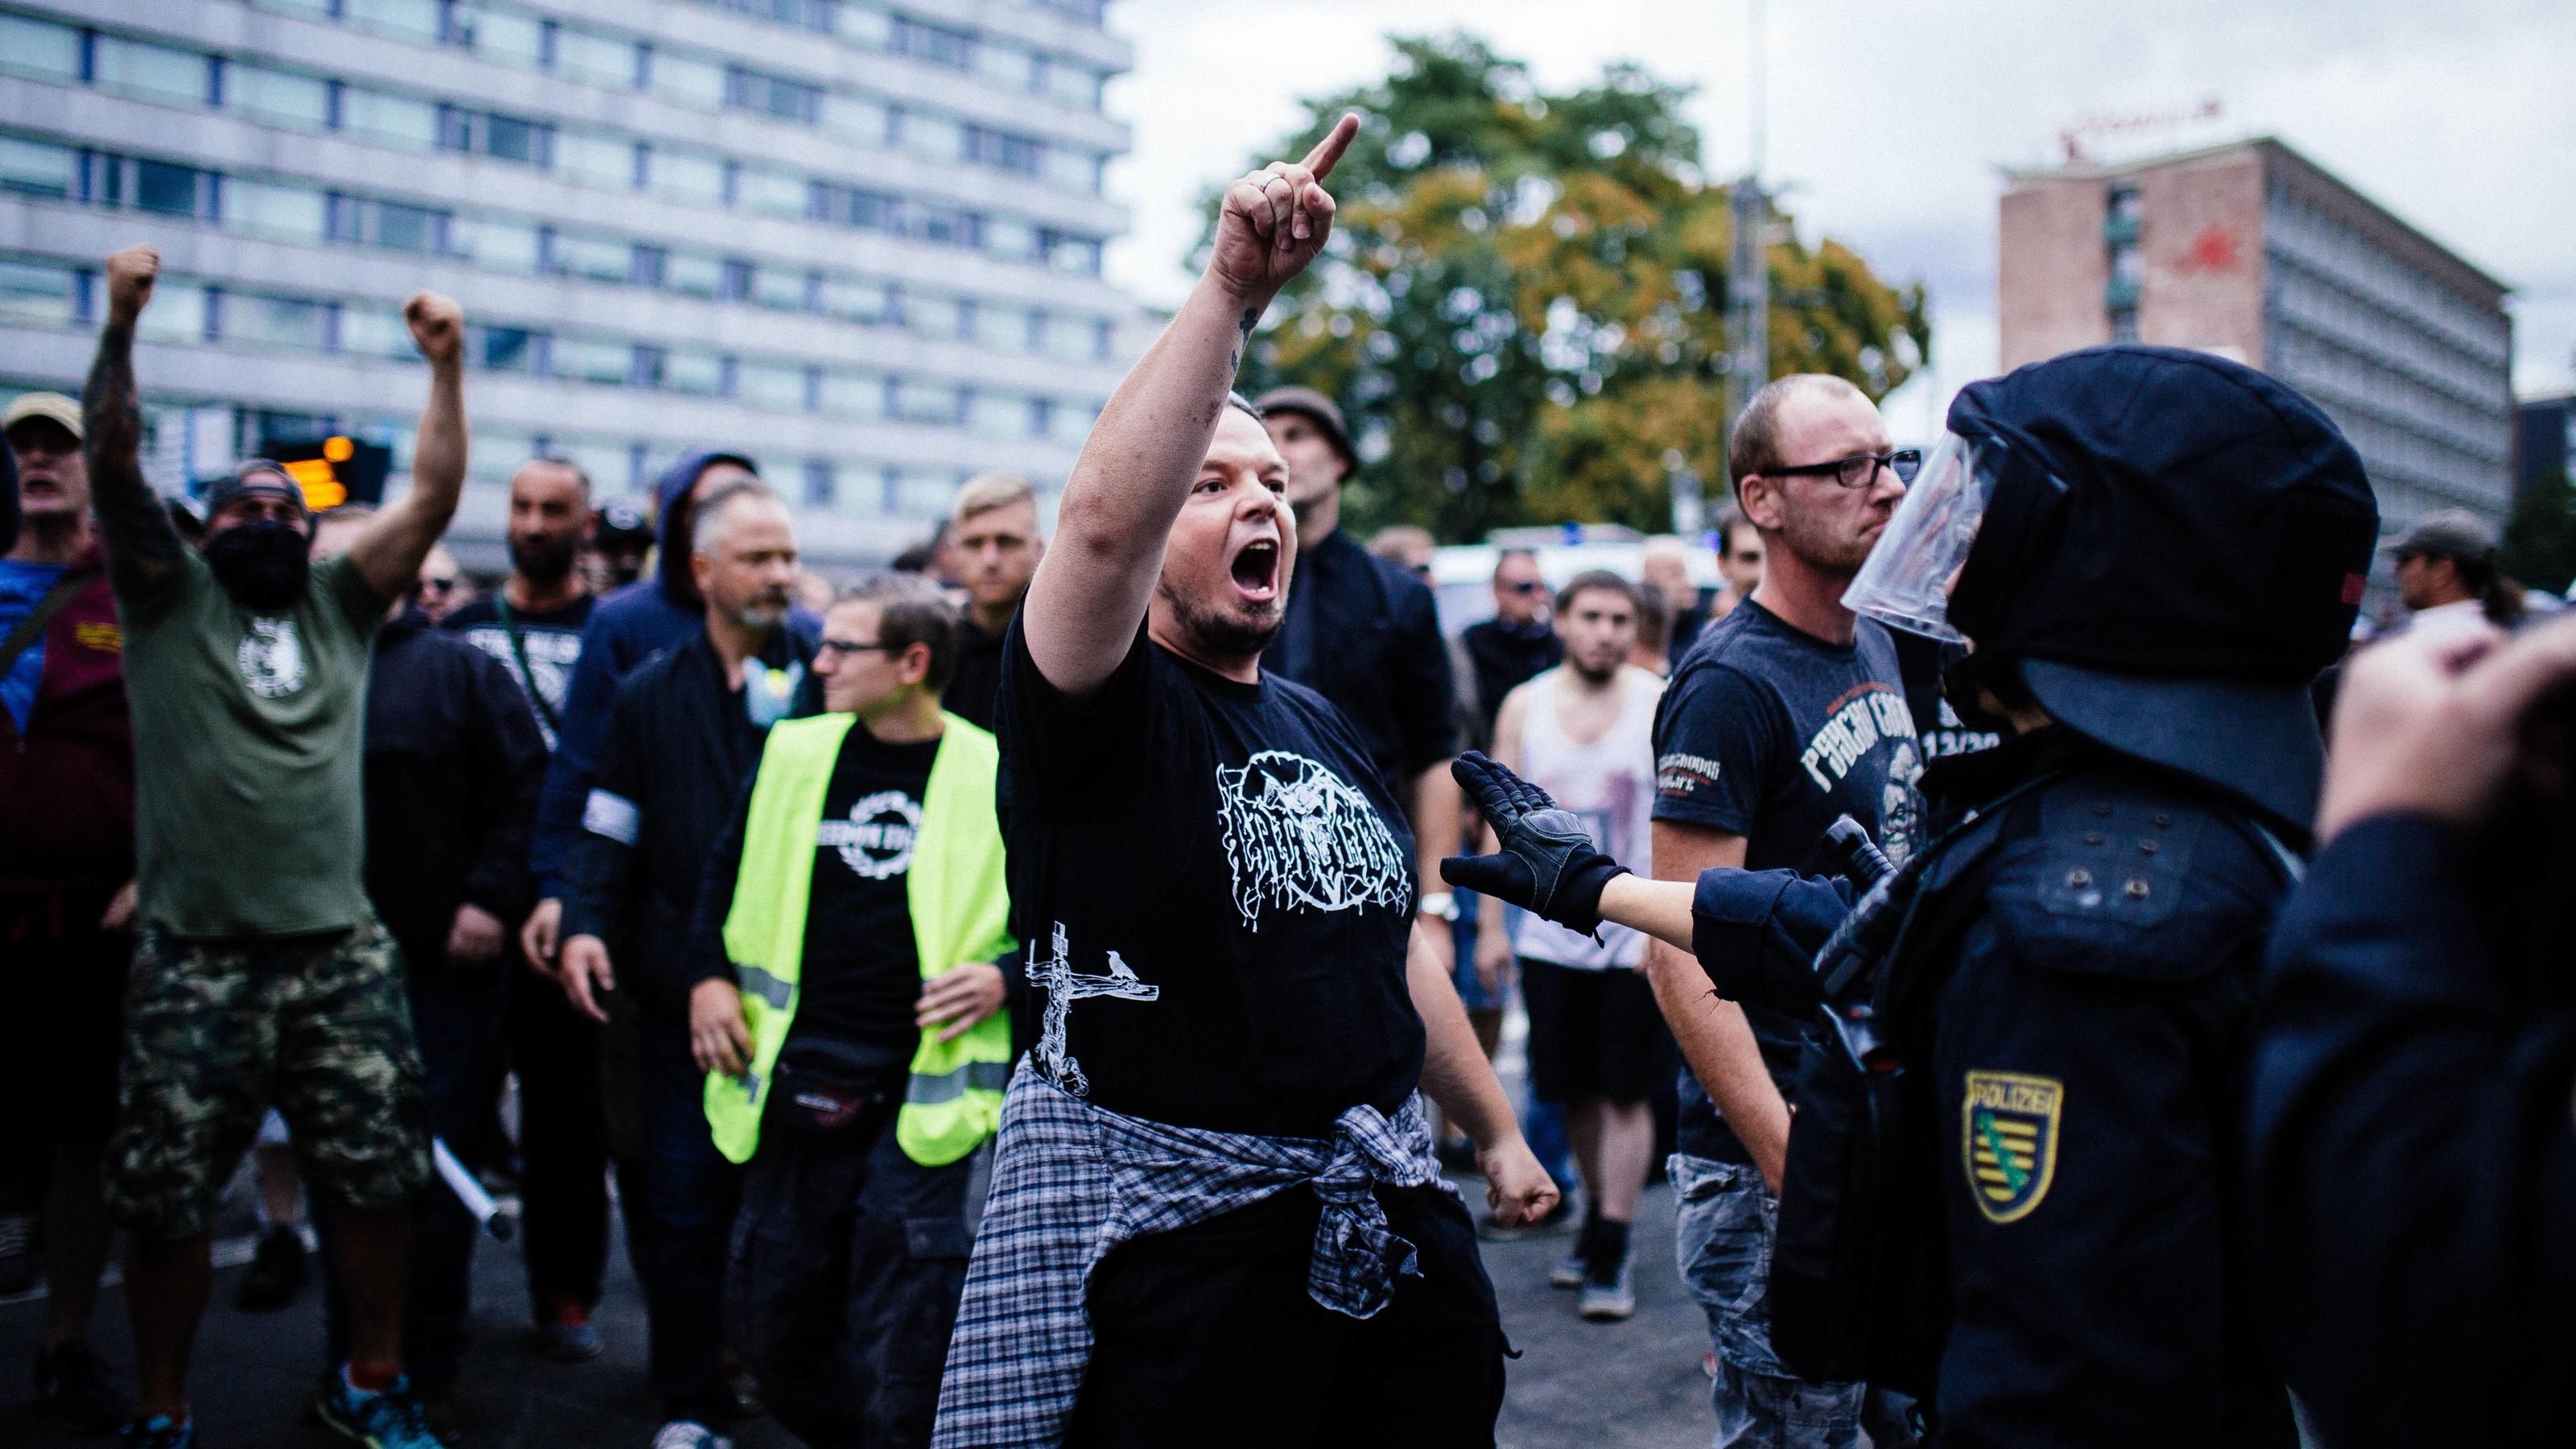 27.8.18 - Ausschreitungen bei Pro Chemnitz Veranstaltung - Nach dem Tod eines jungen Mannes bei einer Messerstecherei am frühen Sonntagmorgen, versammelten sich mehrere tausend Personen aus dem gesamten rechtsextremen Spektrum und Hooligan Milieu in 